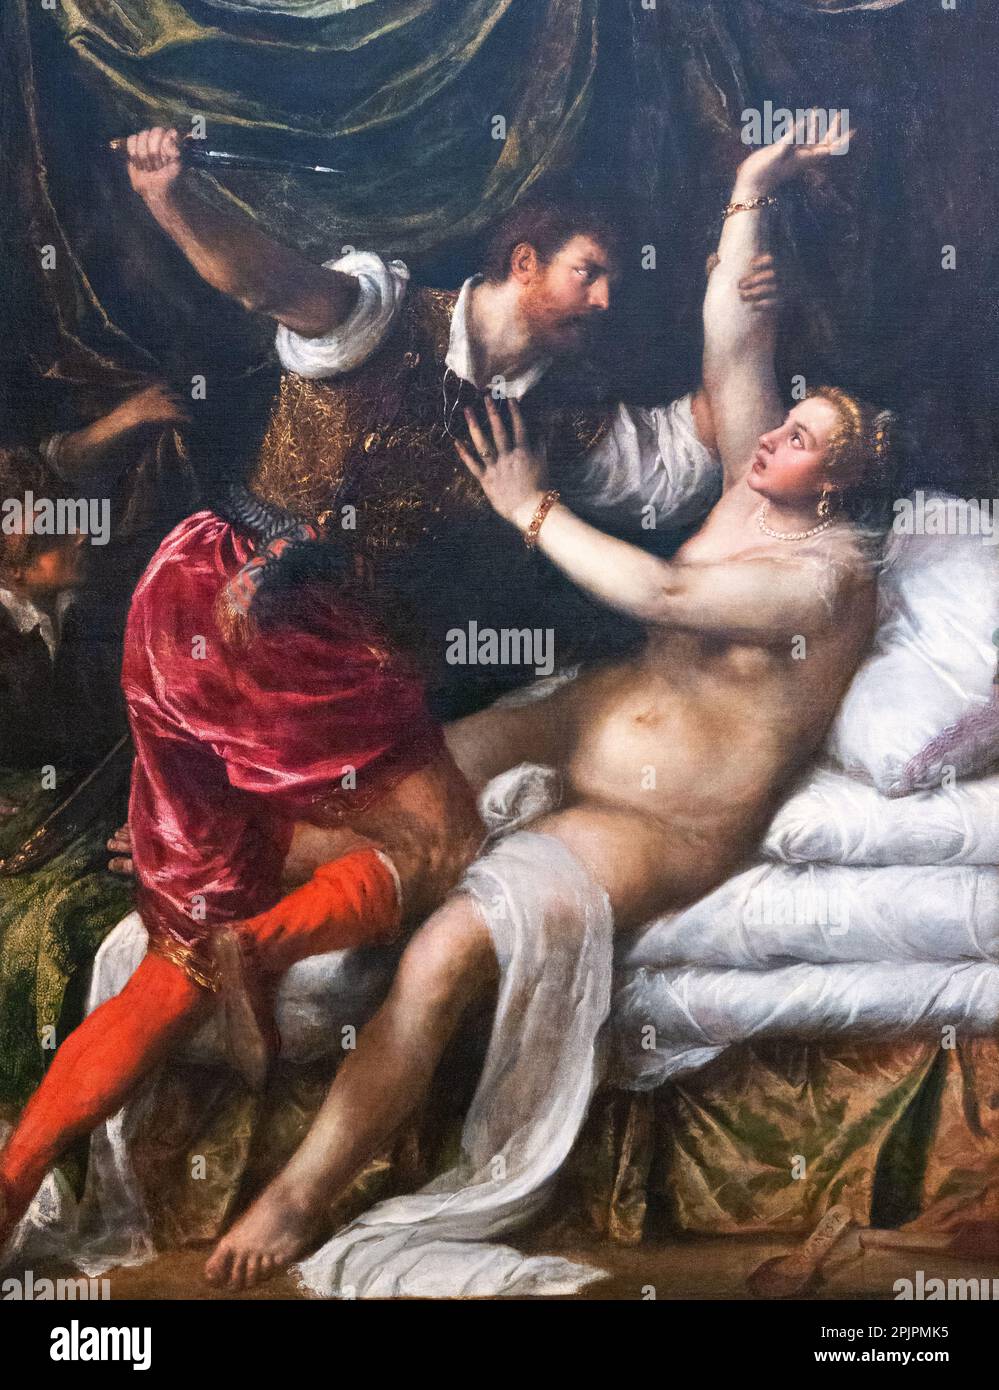 Tizianisches Gemälde, italienisches Renaissance-Gemälde; Tarquin und Lucretia, 1571; Beispiel für Renaissance-Vergewaltigung, Vergewaltigungsopfer und Messerverbrechen; Kunst des 16. Jahrhunderts. Stockfoto